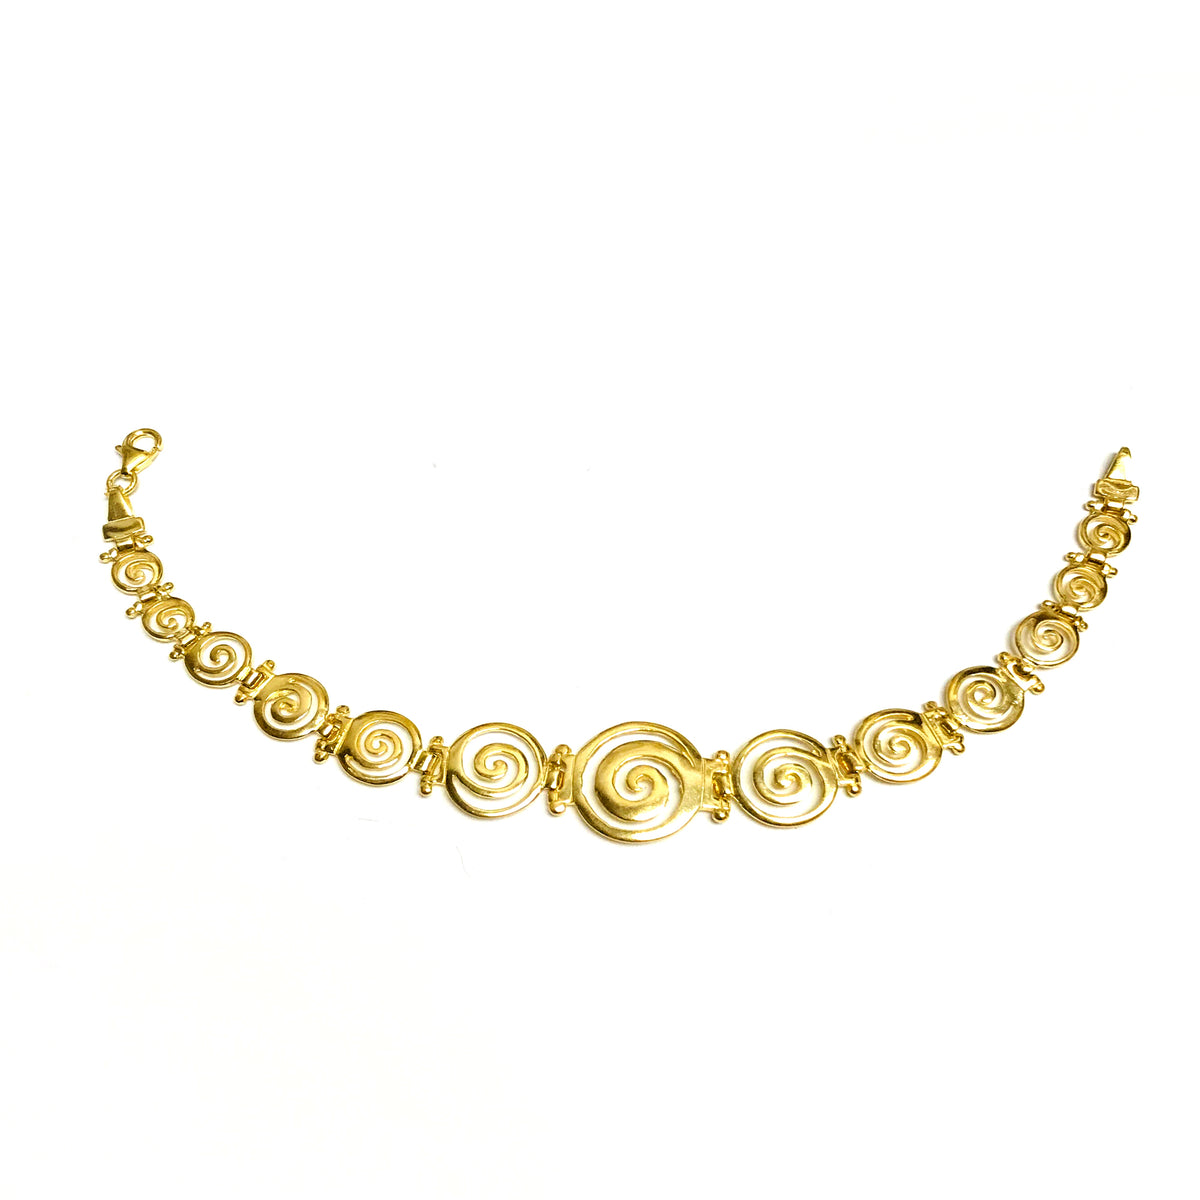 Bracciale con chiave a spirale greca in argento sterling con rivestimento in oro 18k, gioielli di alta moda da 7,5" per uomini e donne